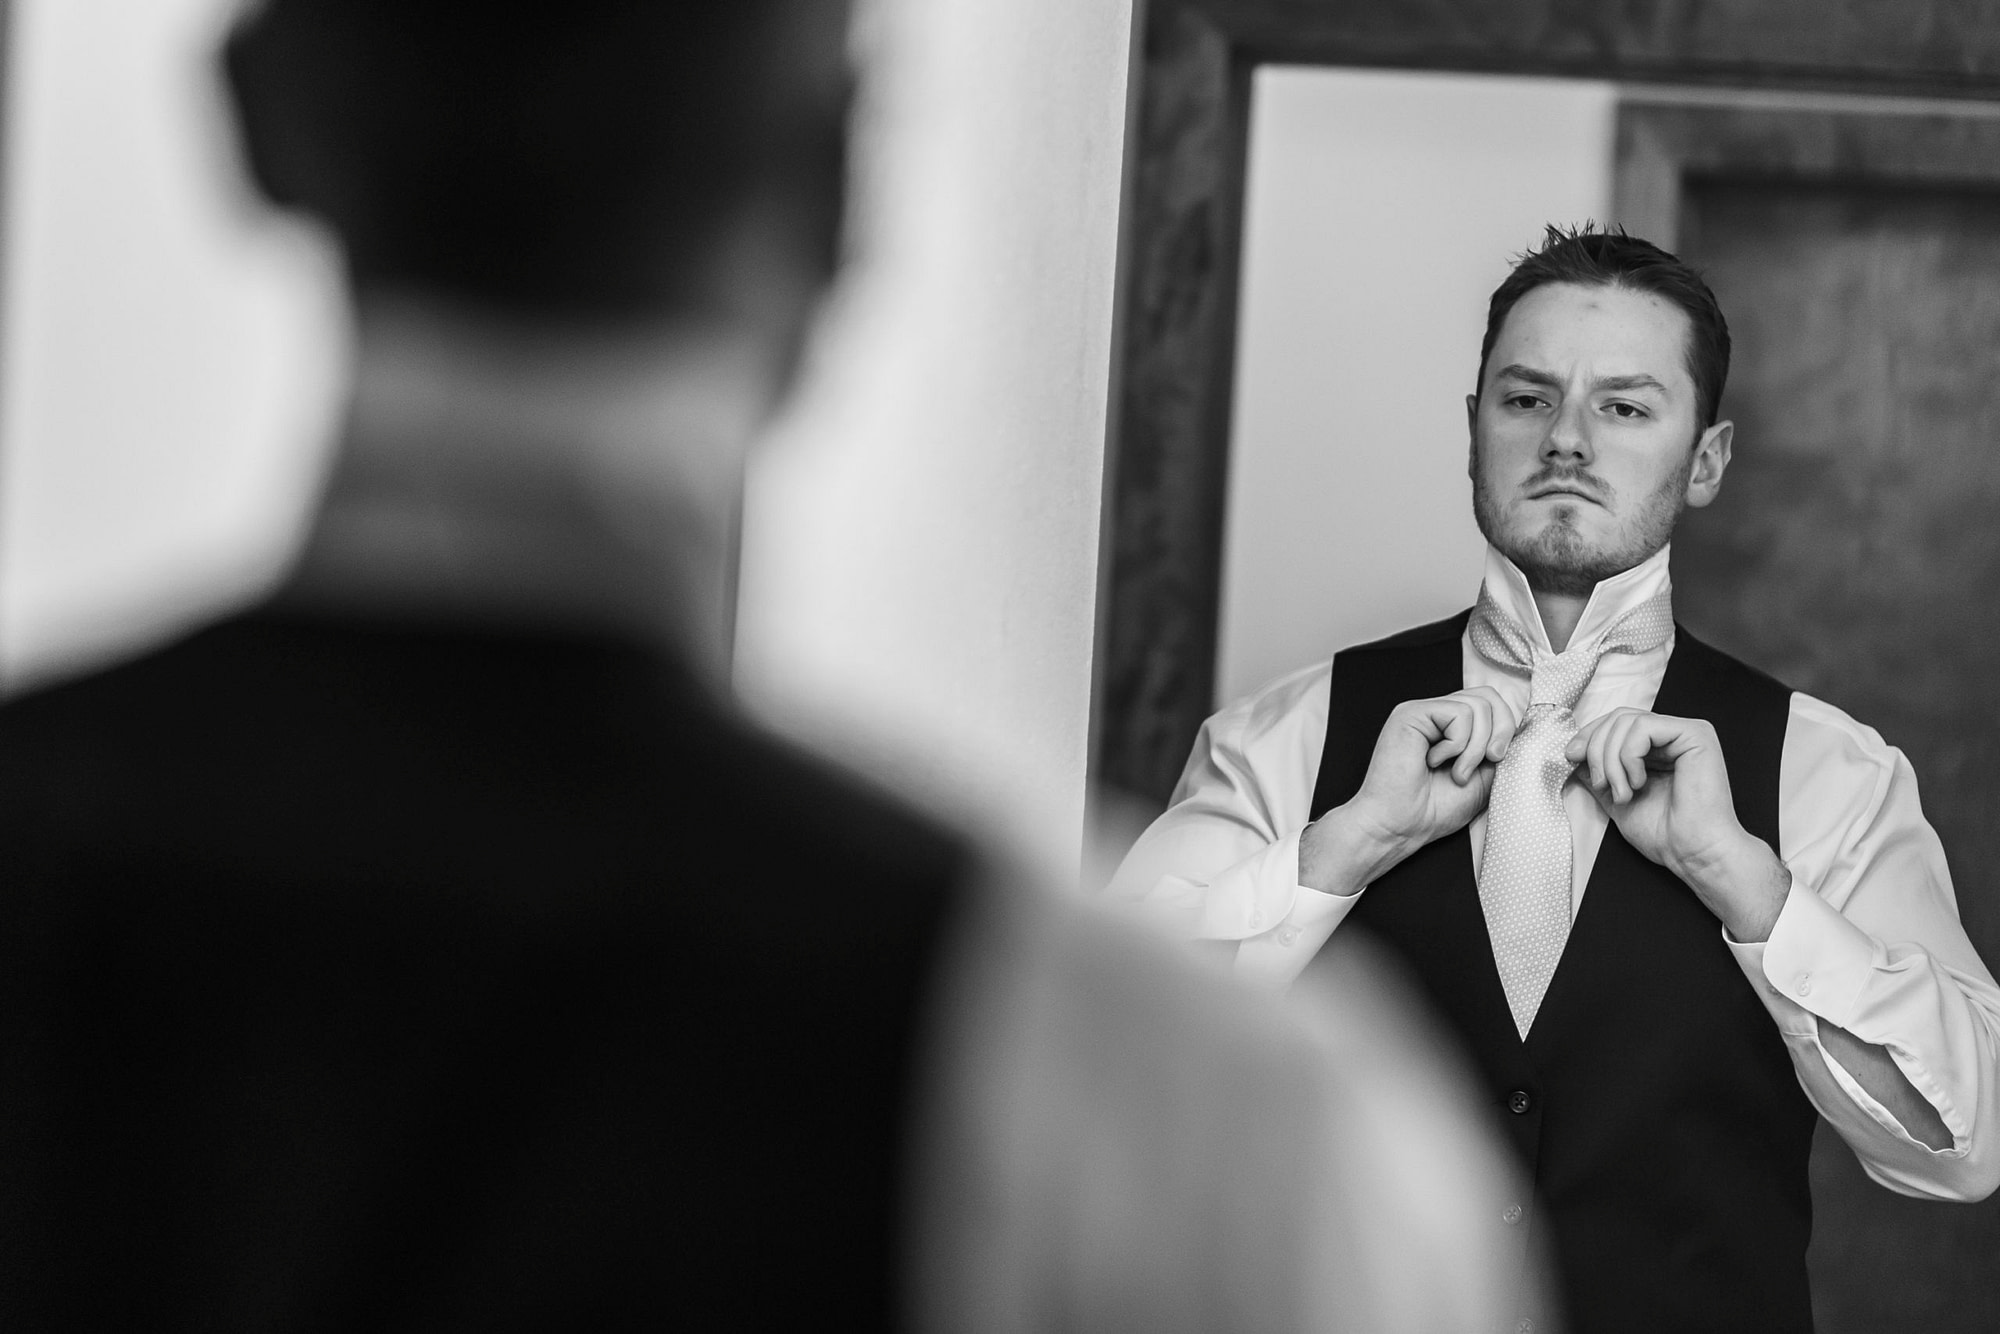 The groom adjusts his tie during his YMCA of the Rockies wedding in Estes Park, Colorado.